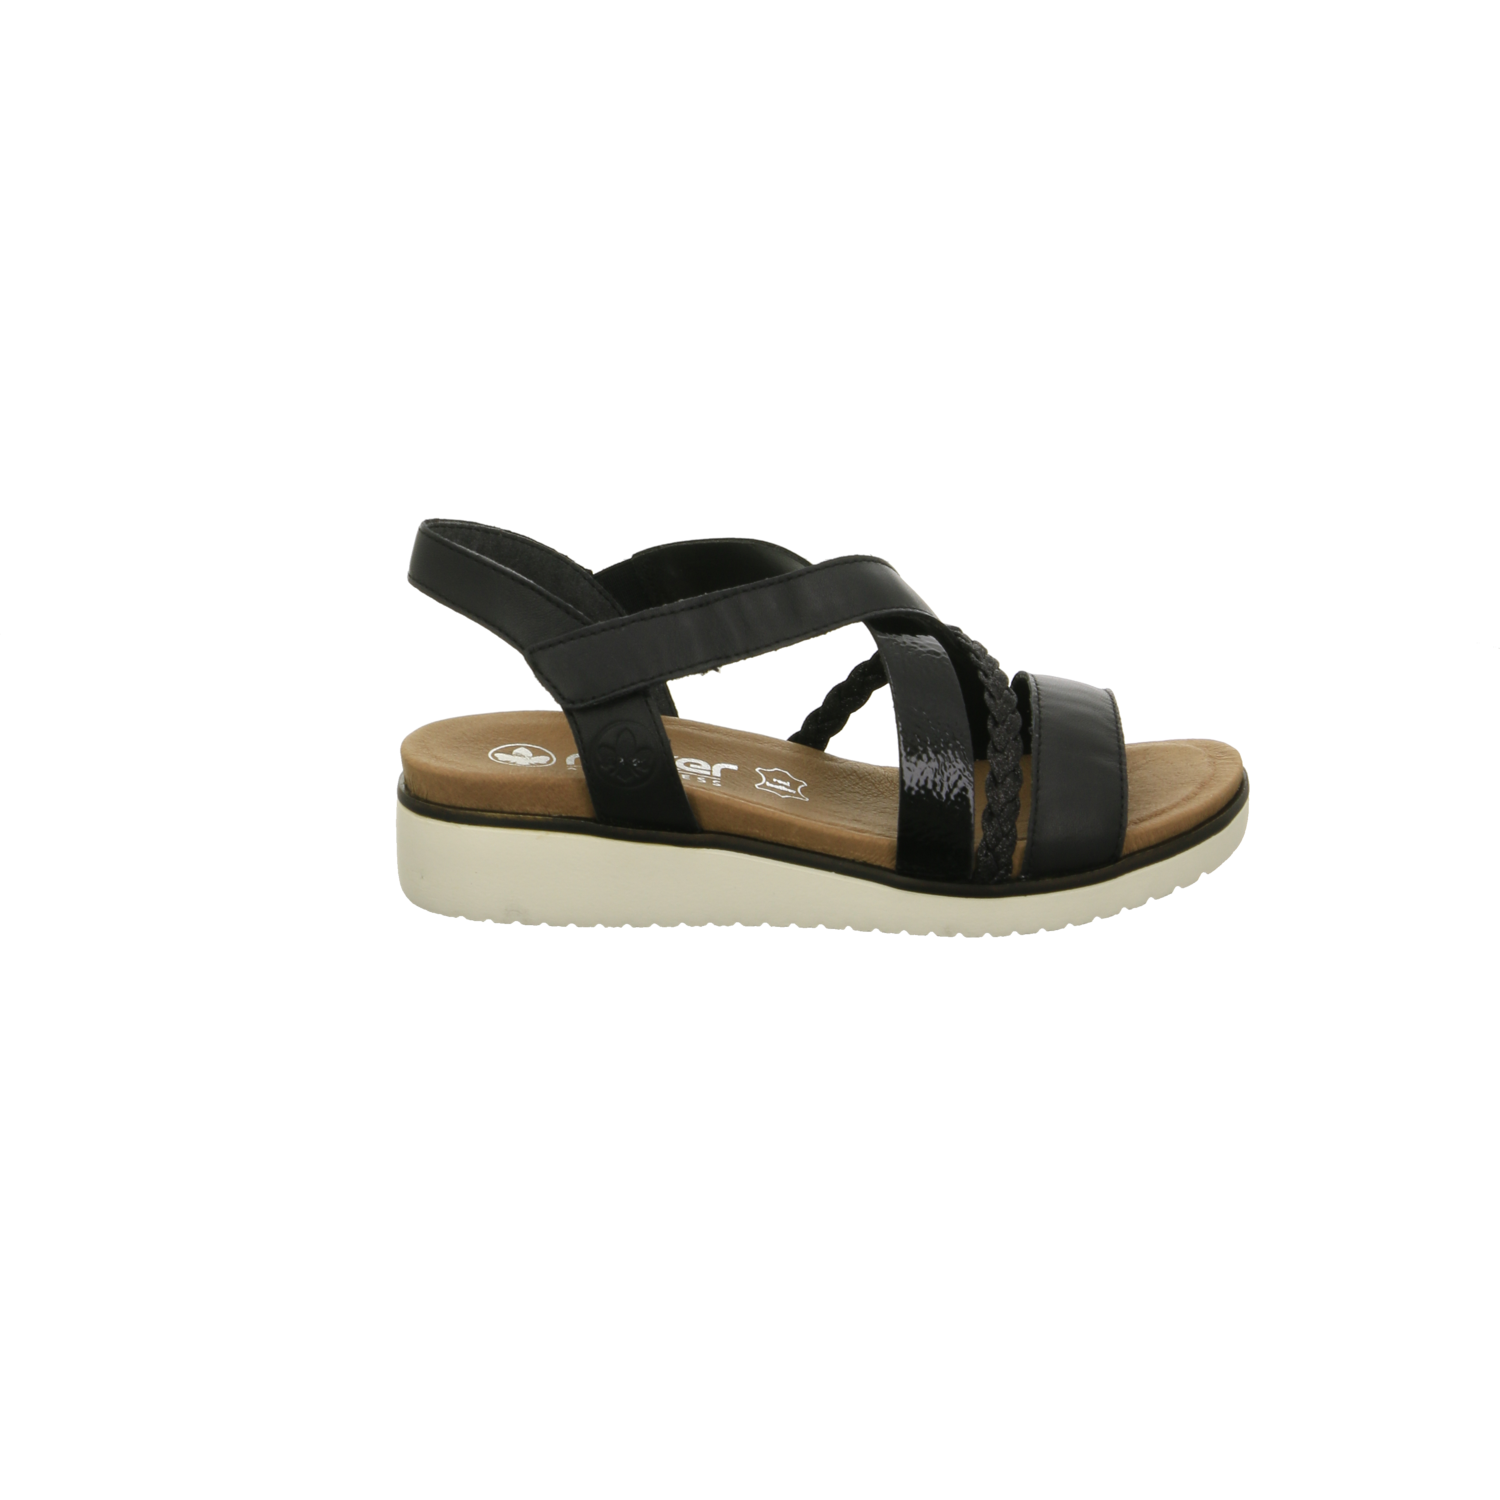 Rieker Sandalette bis 45 mm schwarz/schwarz/blac